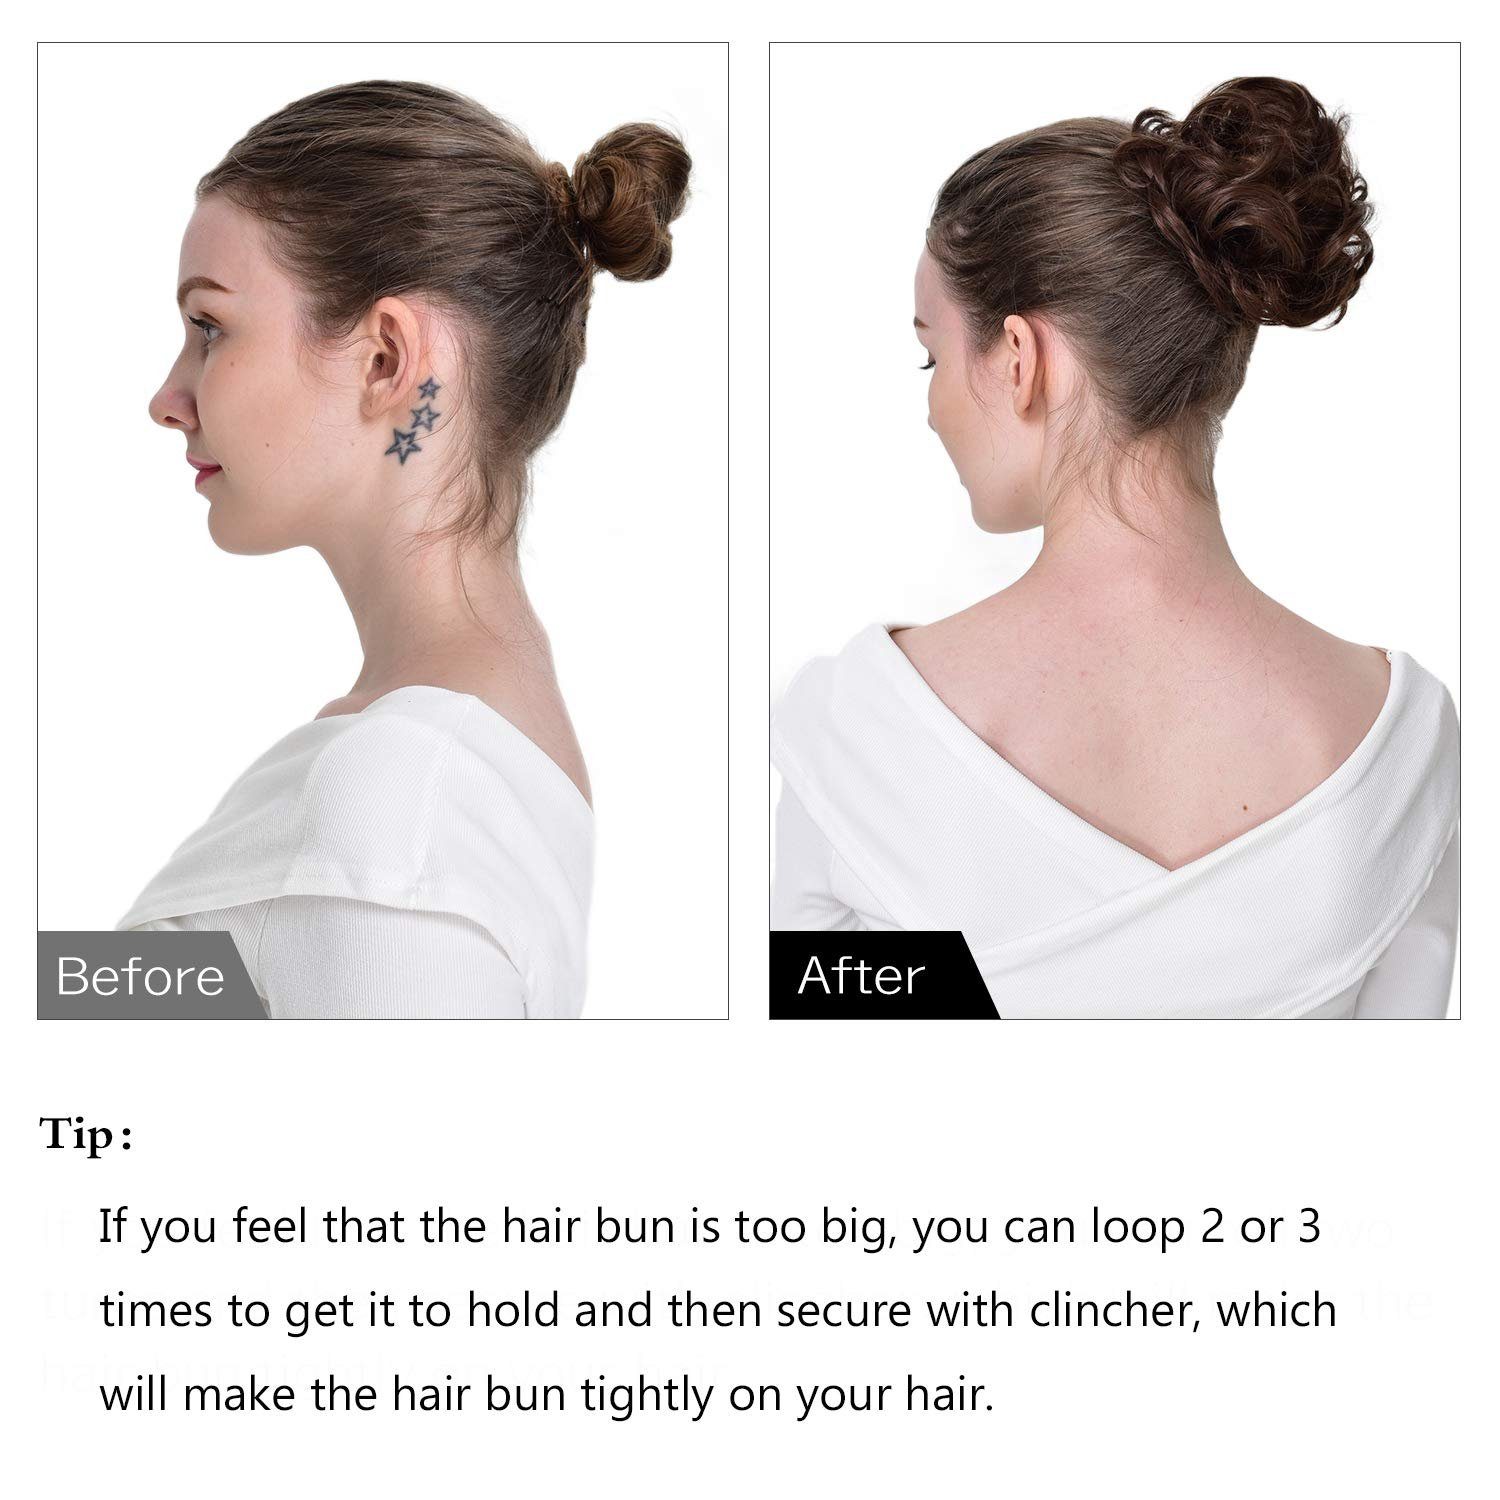 Püke Frauen Haarteil für Haargummi Hochsteckfrisuren, 35g, Kunsthaar-Extension Auburn Dark